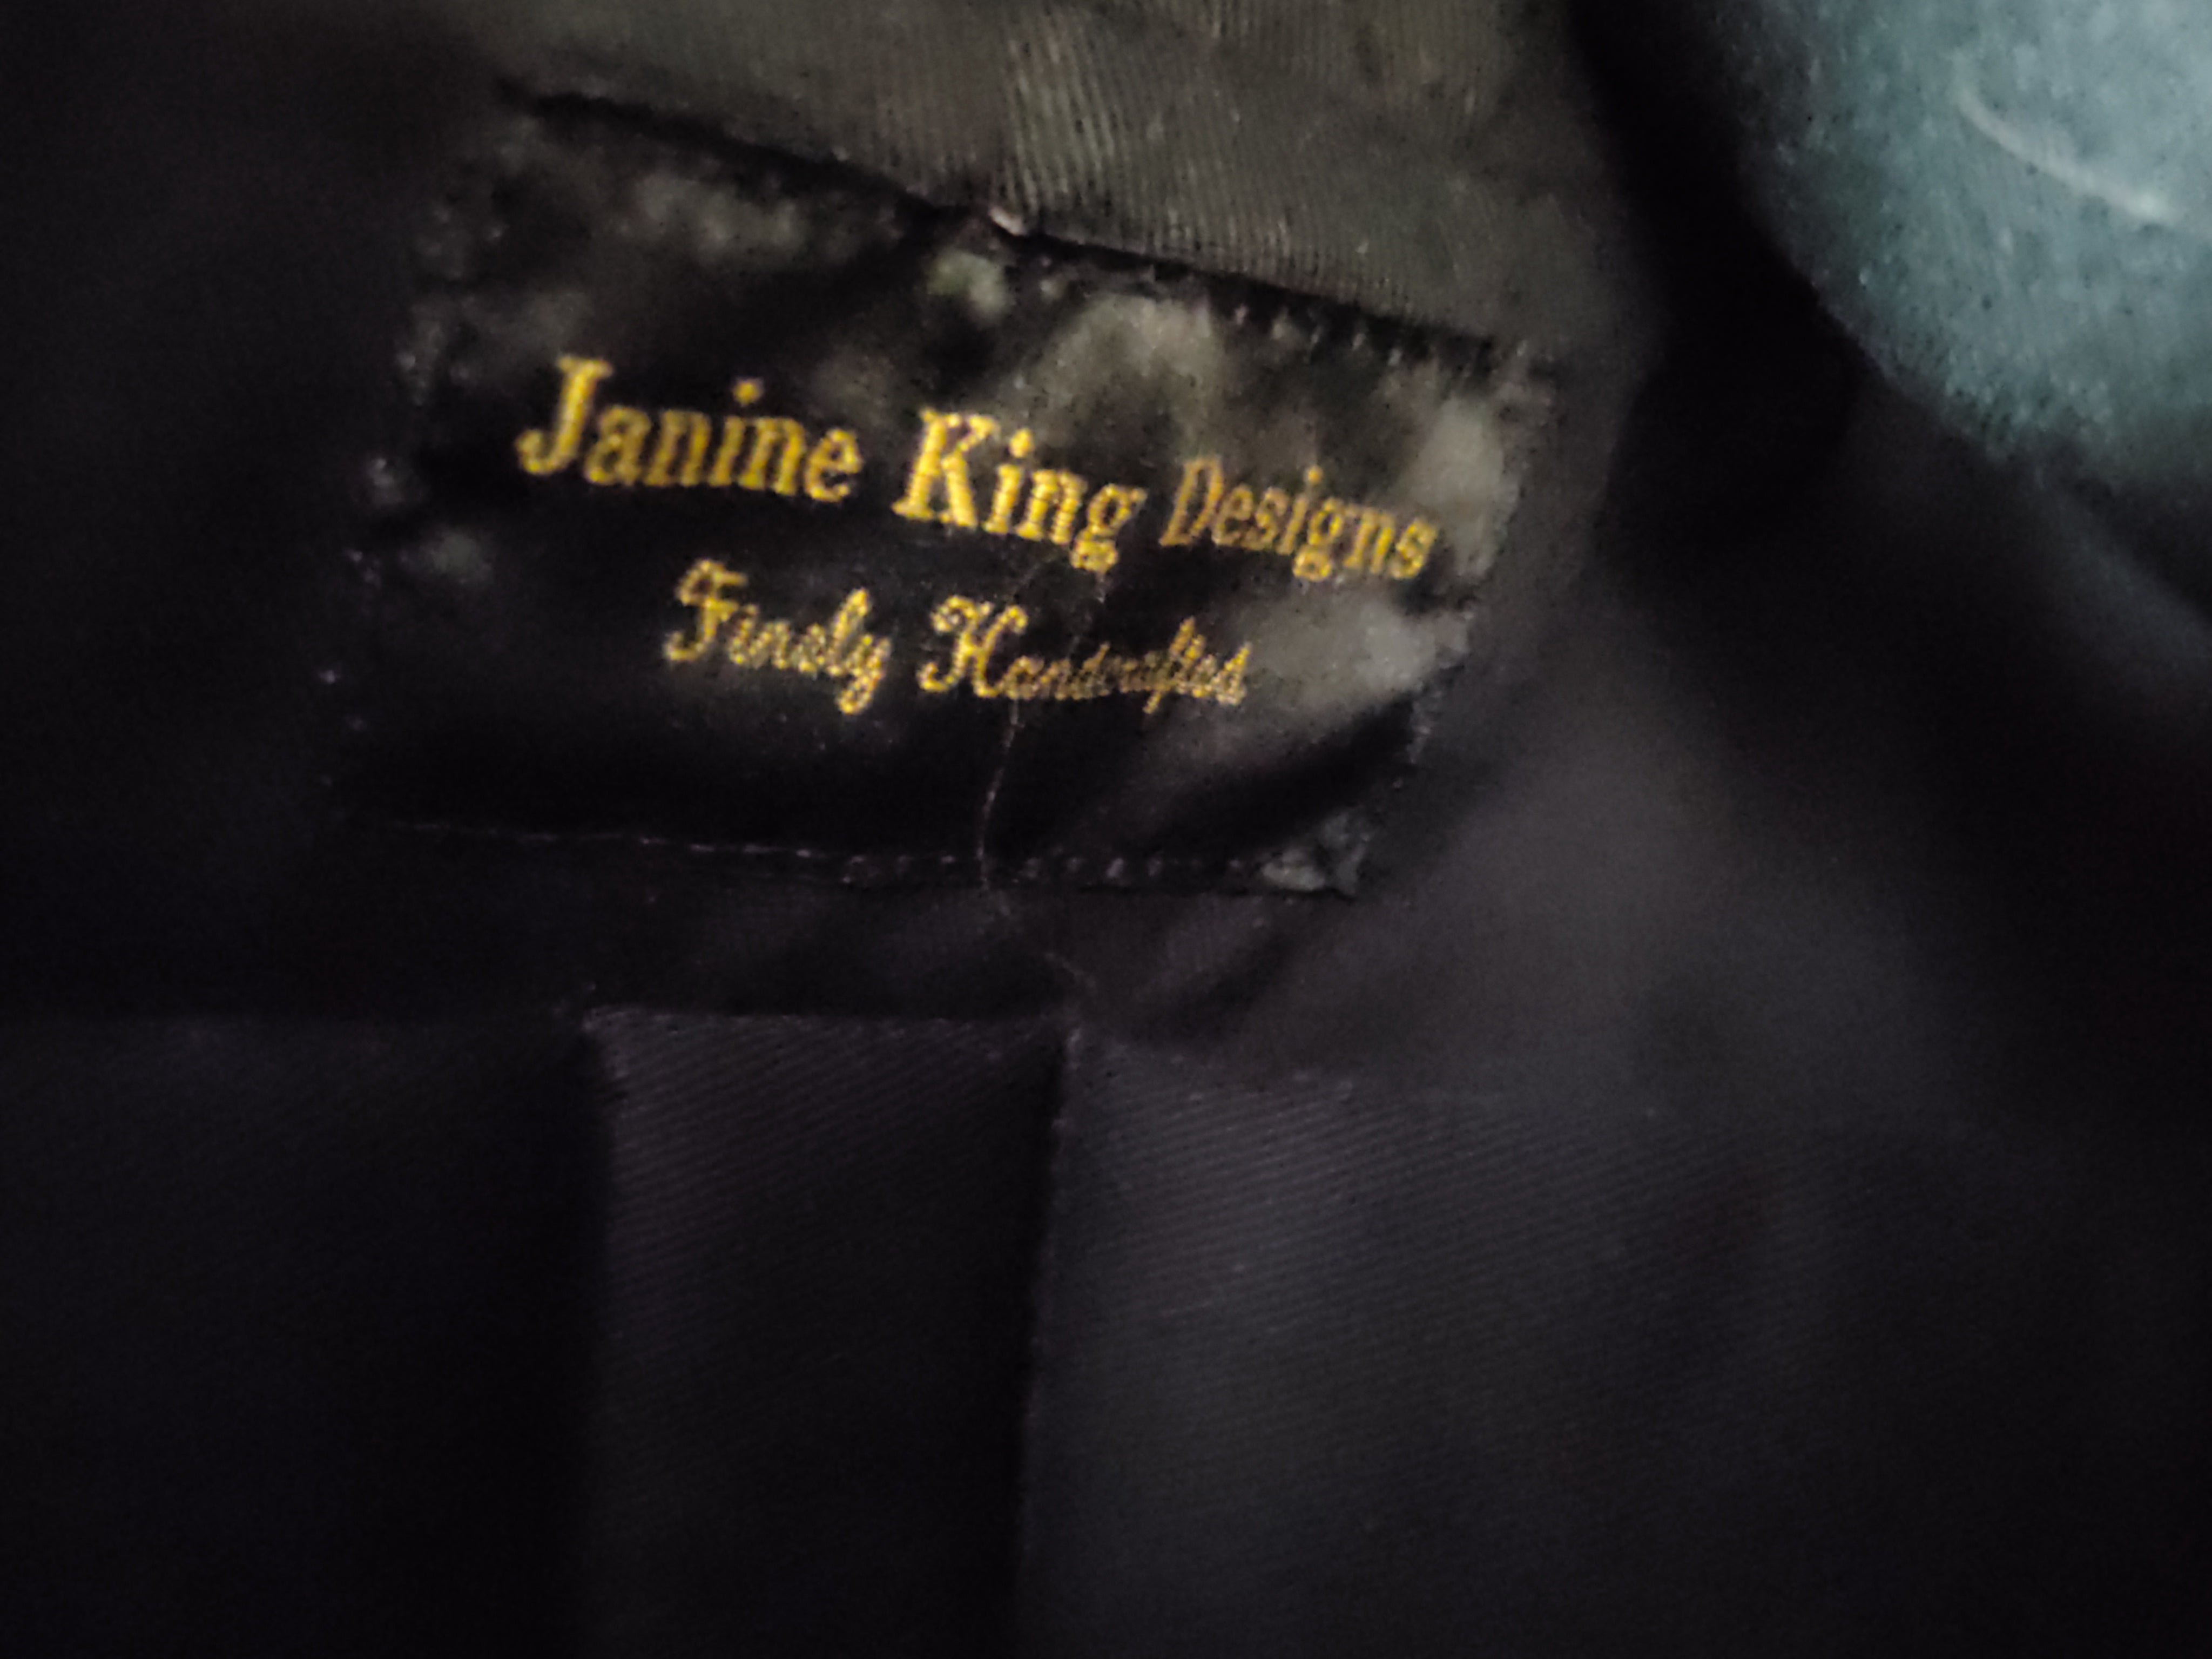 Bolso de mano pequeño de tela Janine King Design de segunda mano en negro, marrón y blanco (recogida gratuita en Manchester, KY)